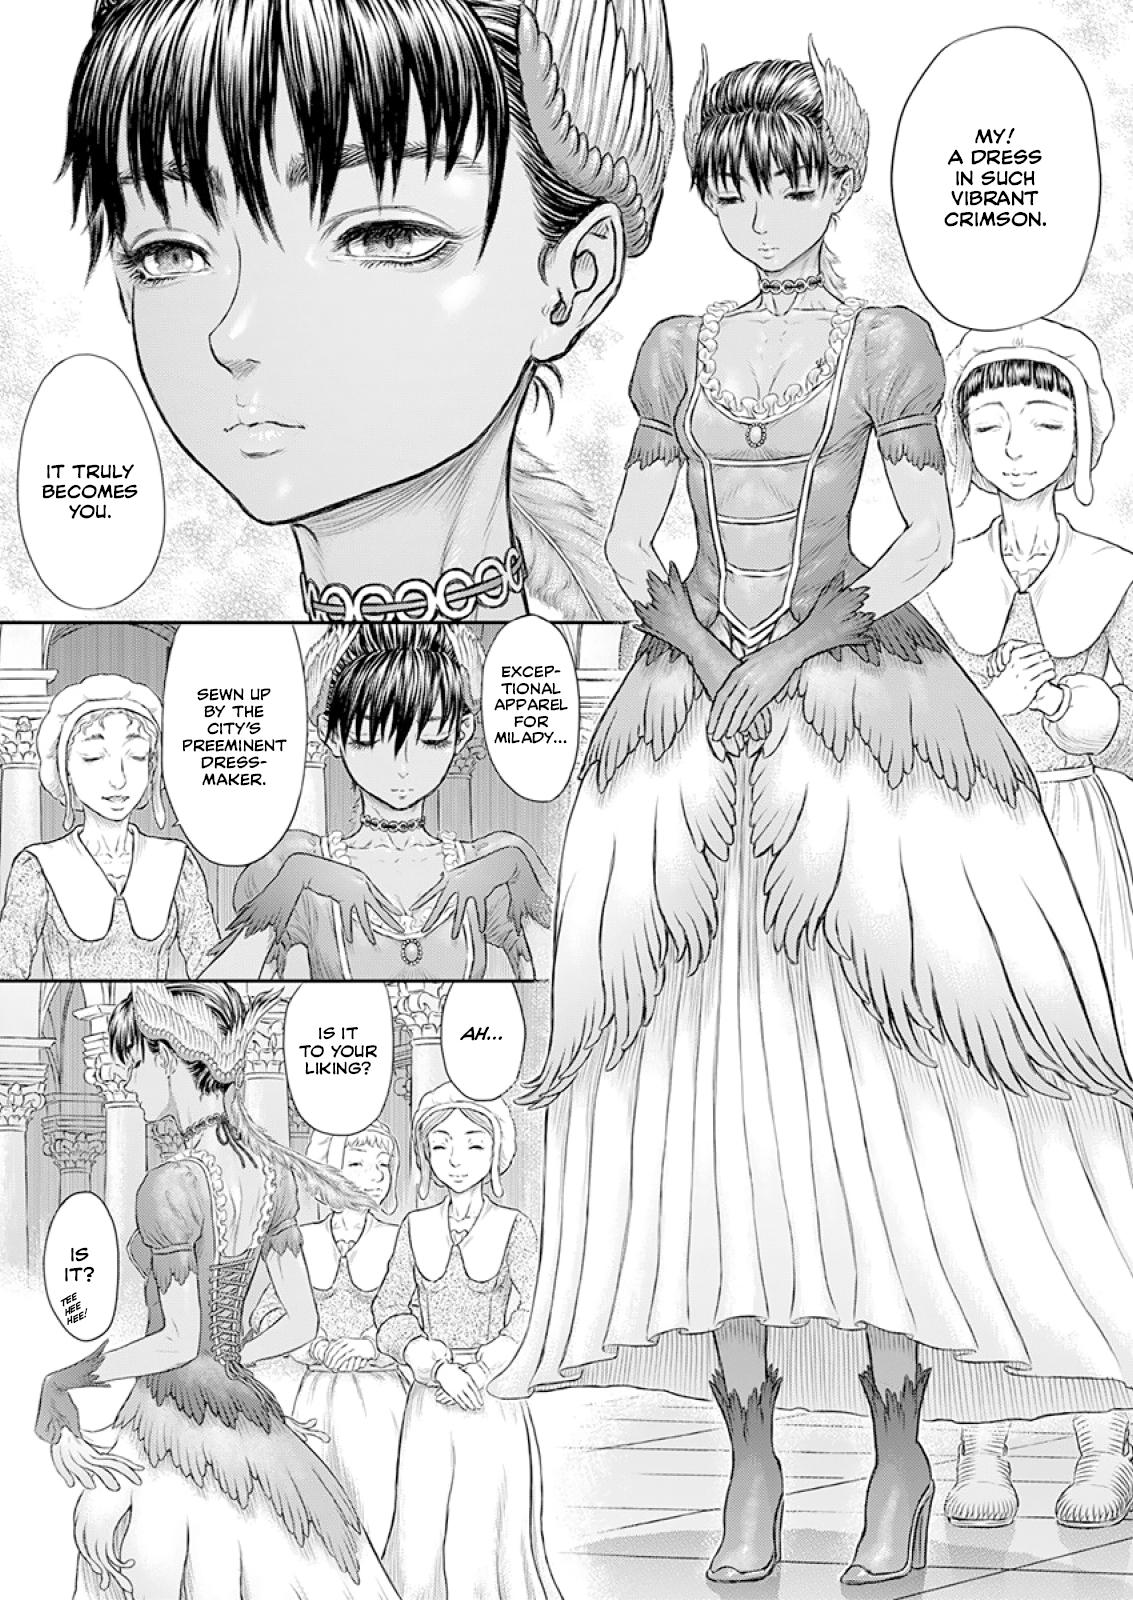 Berserk Manga Chapter 372 image 06